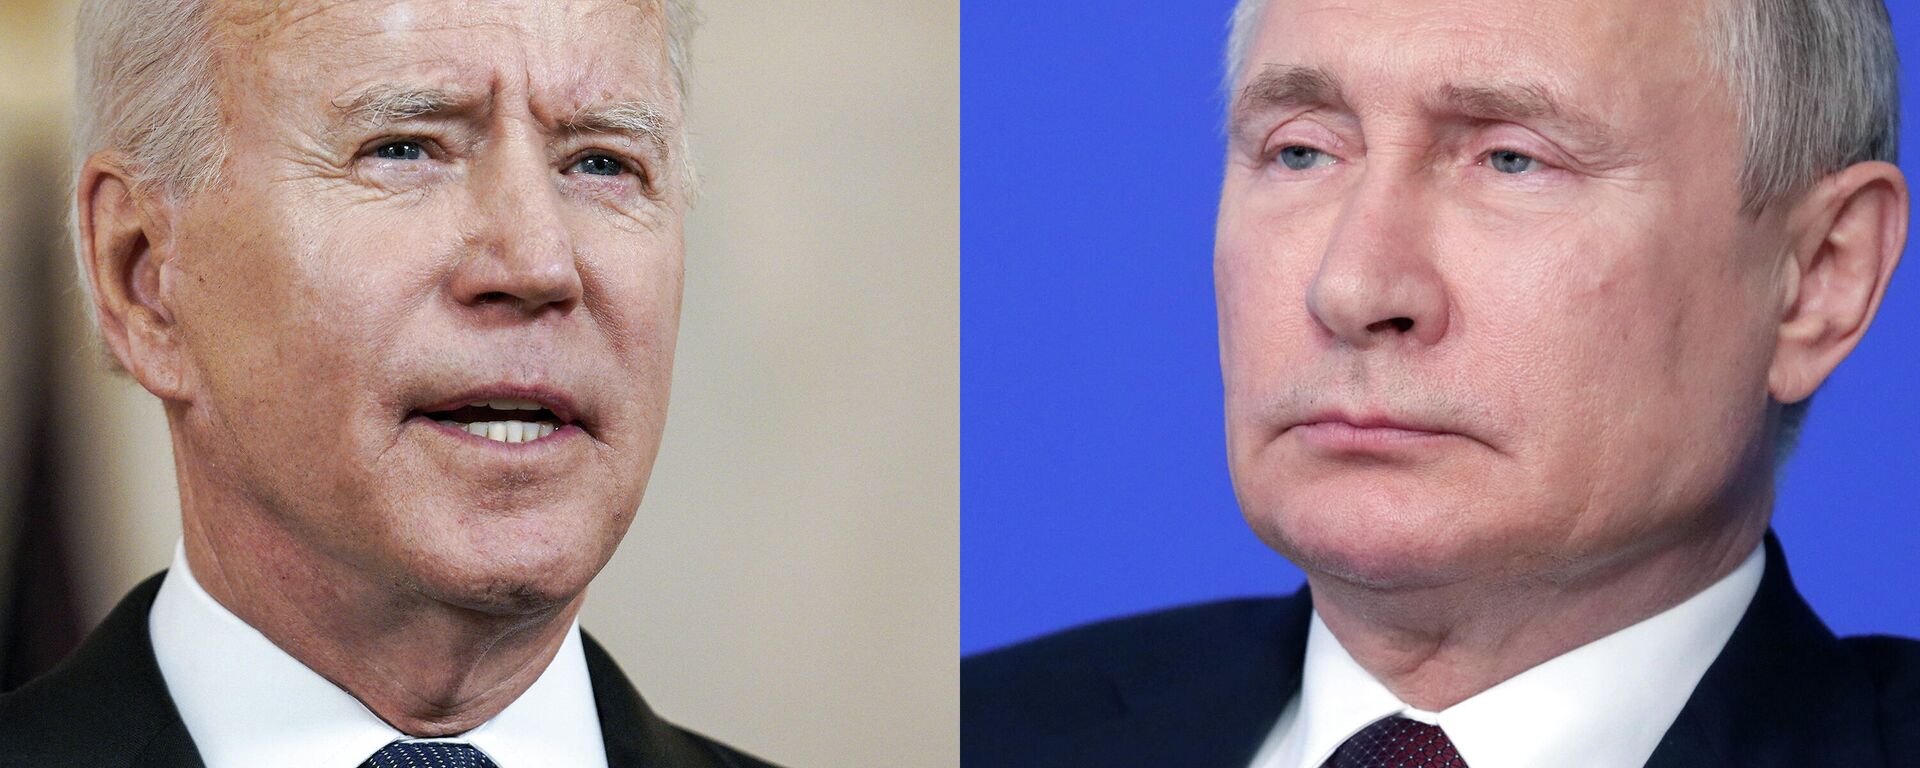 Joe Biden, presidente de EEUU, y Vladímir Putin, presidente de Rusia - Sputnik Mundo, 1920, 10.12.2021